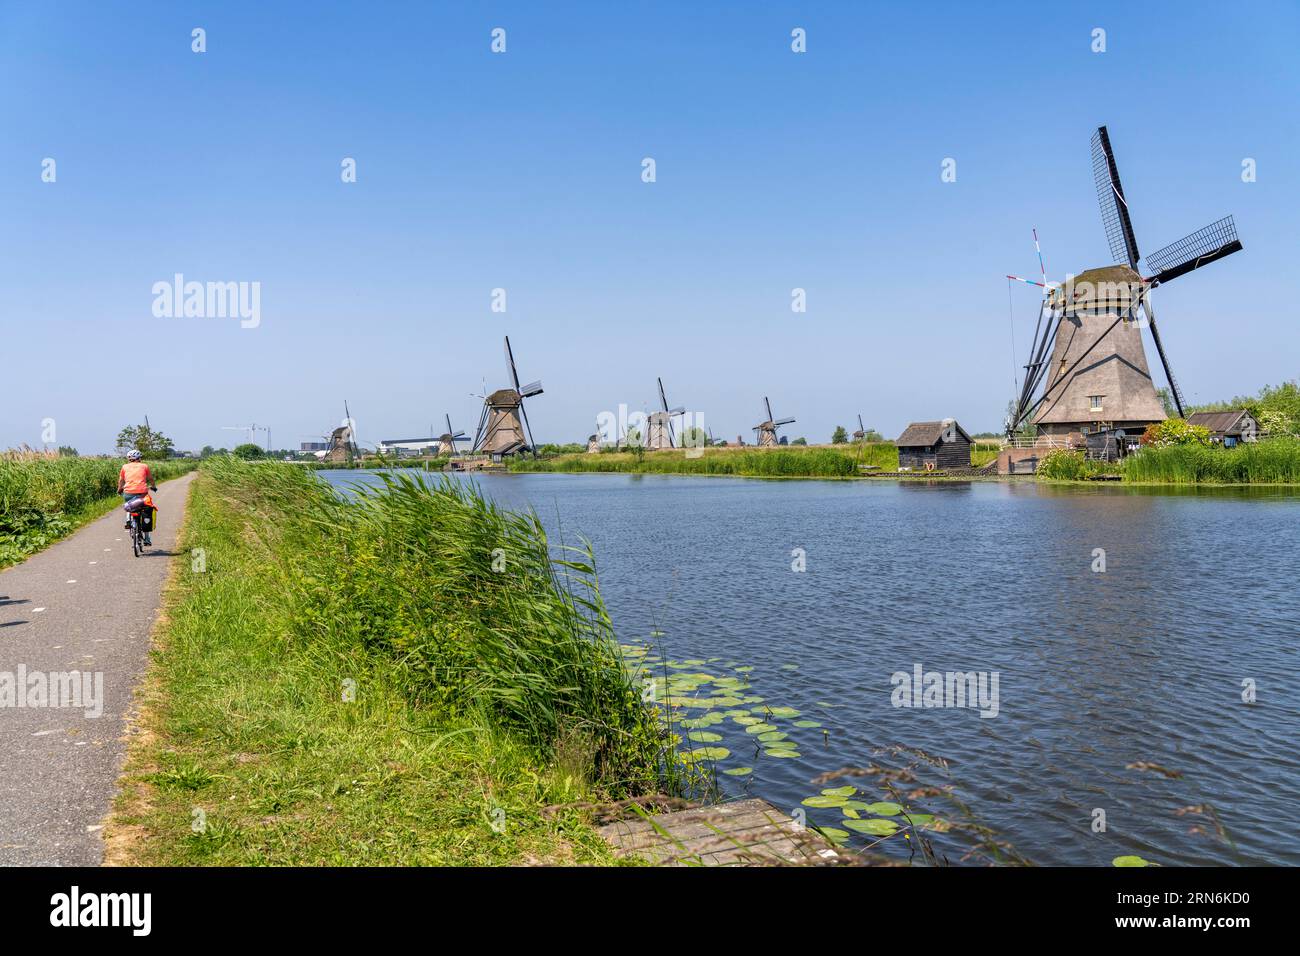 Kinderdijk, 18 Windmühlen die das Wasser aus den Poldern abpumpen sollten um das Land nutzen zu können, eine der bekanntesten Sehenswürdigkeiten, UNES Stock Photo